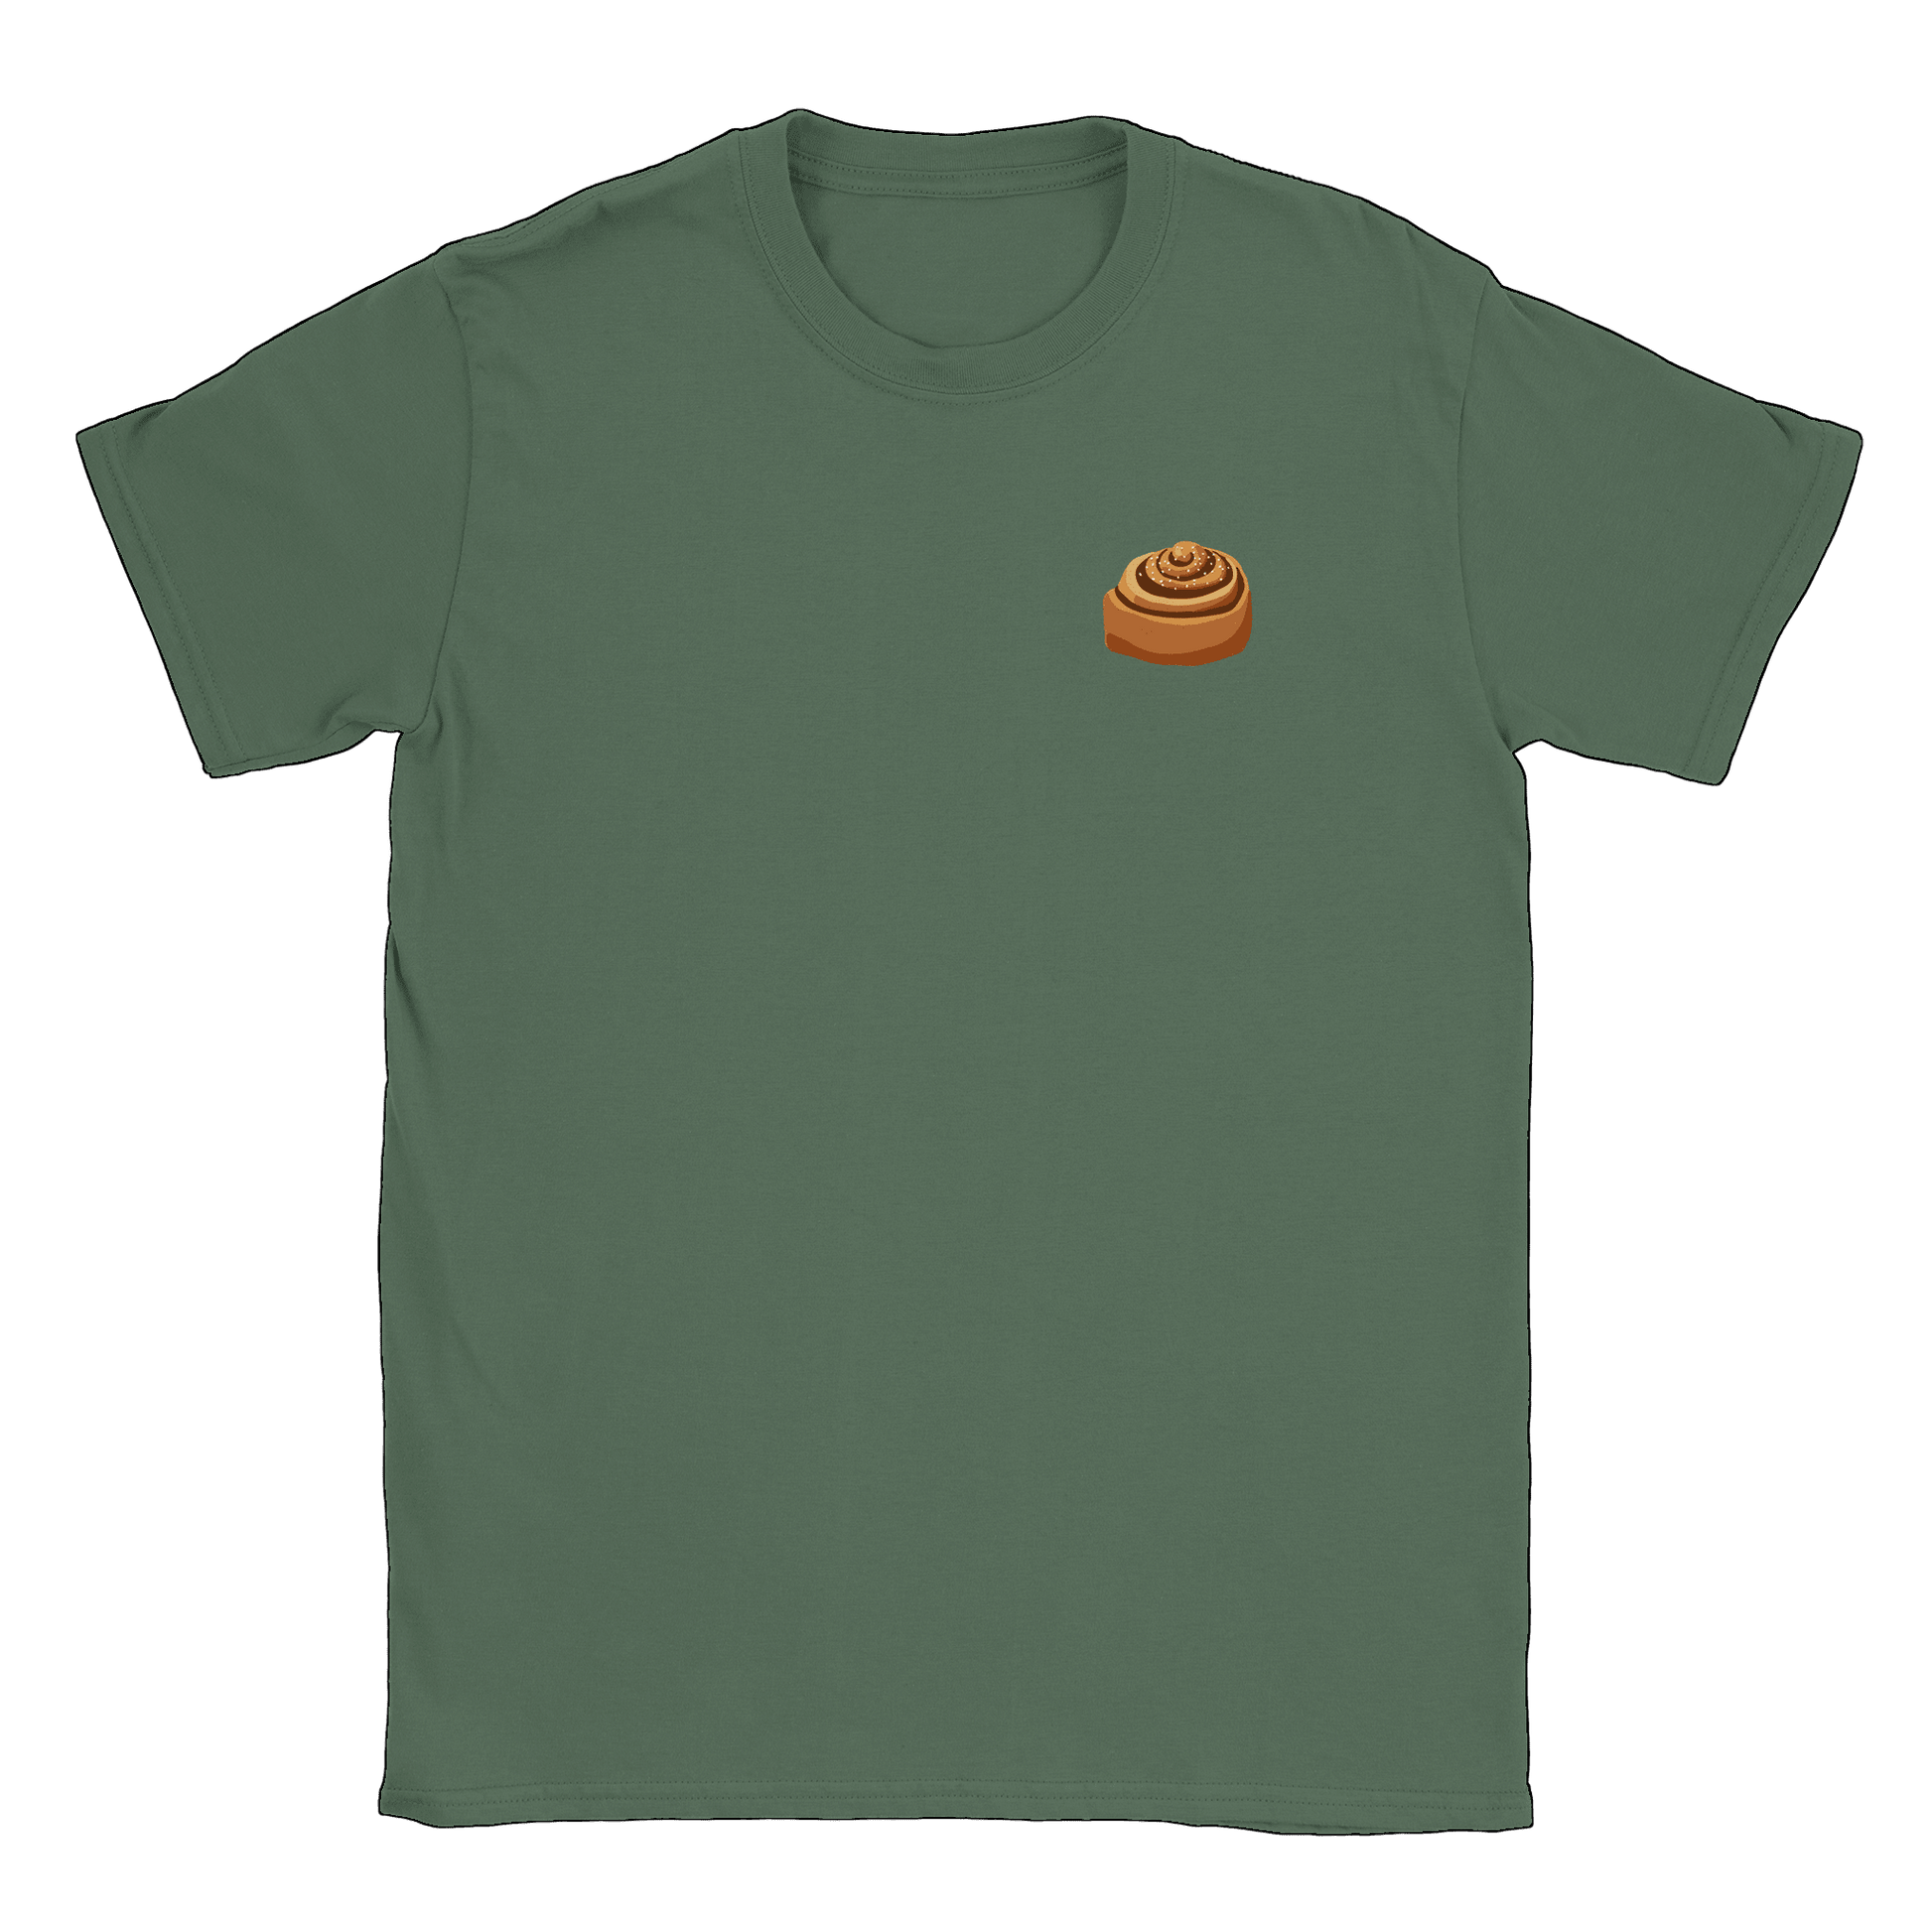 Kanelbulle Liten - T-shirt Military Green